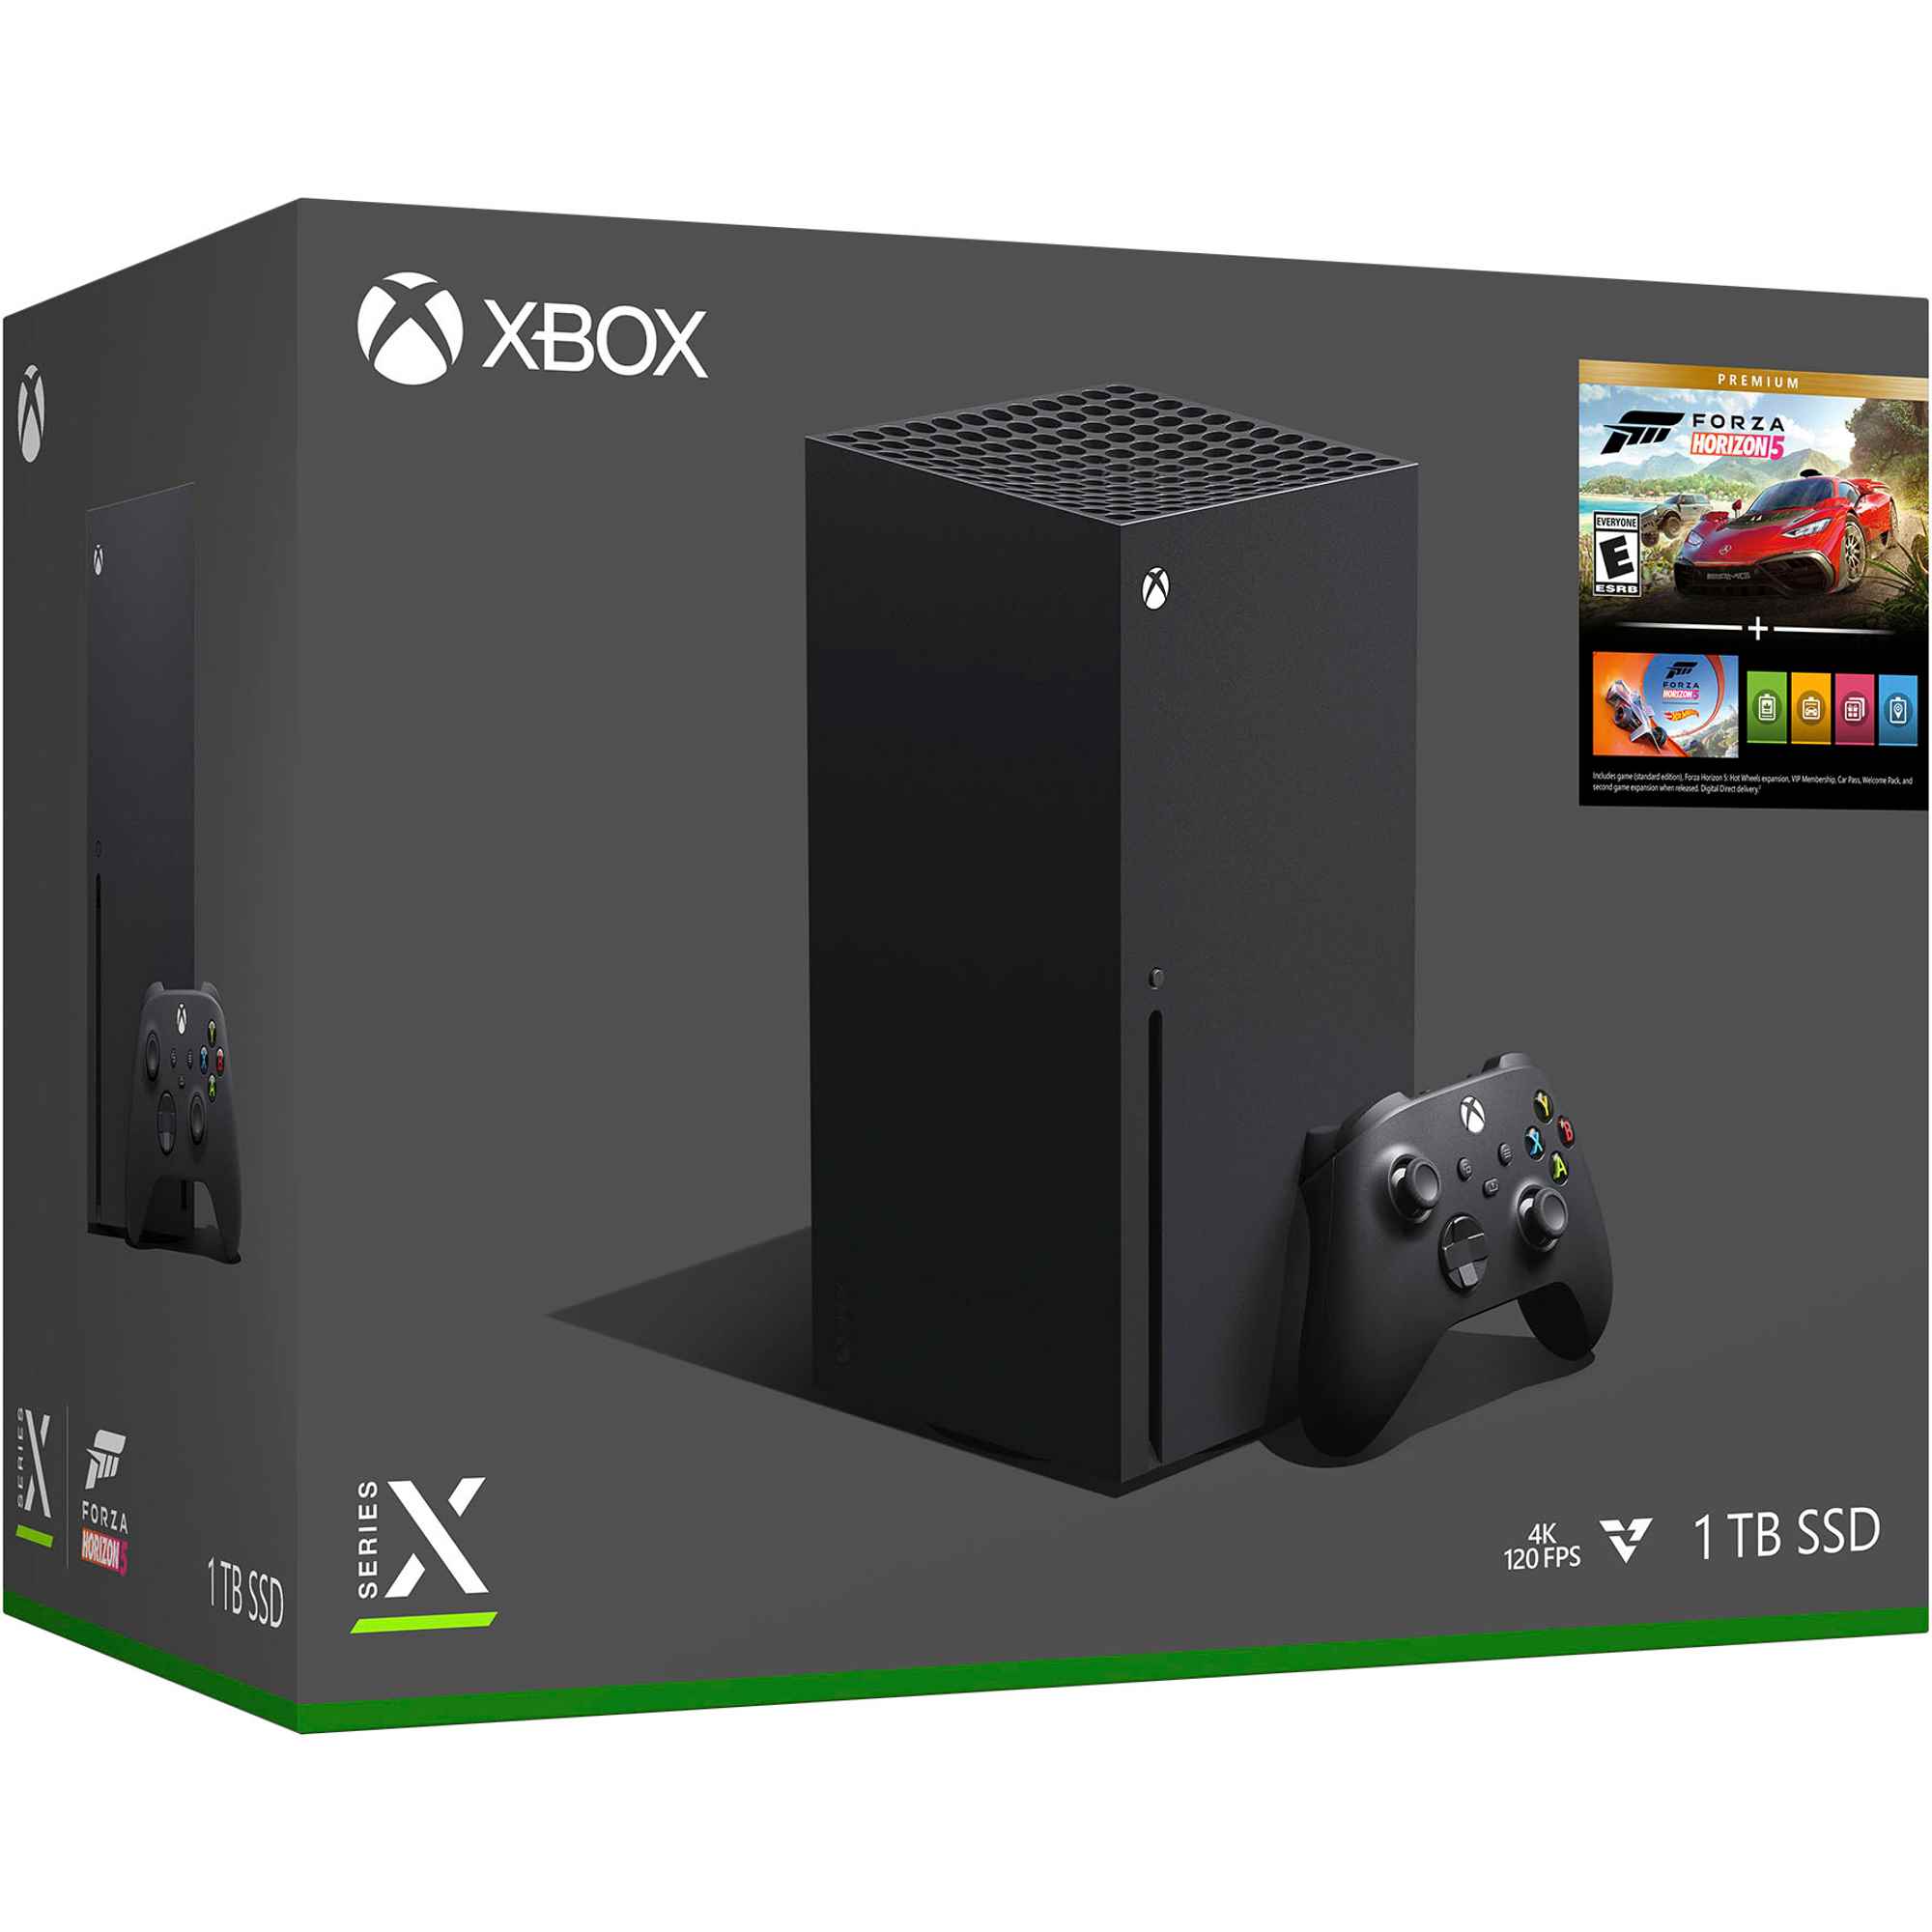 Xbox Series X — Forza Horizon 5 paket perakende kutusu.